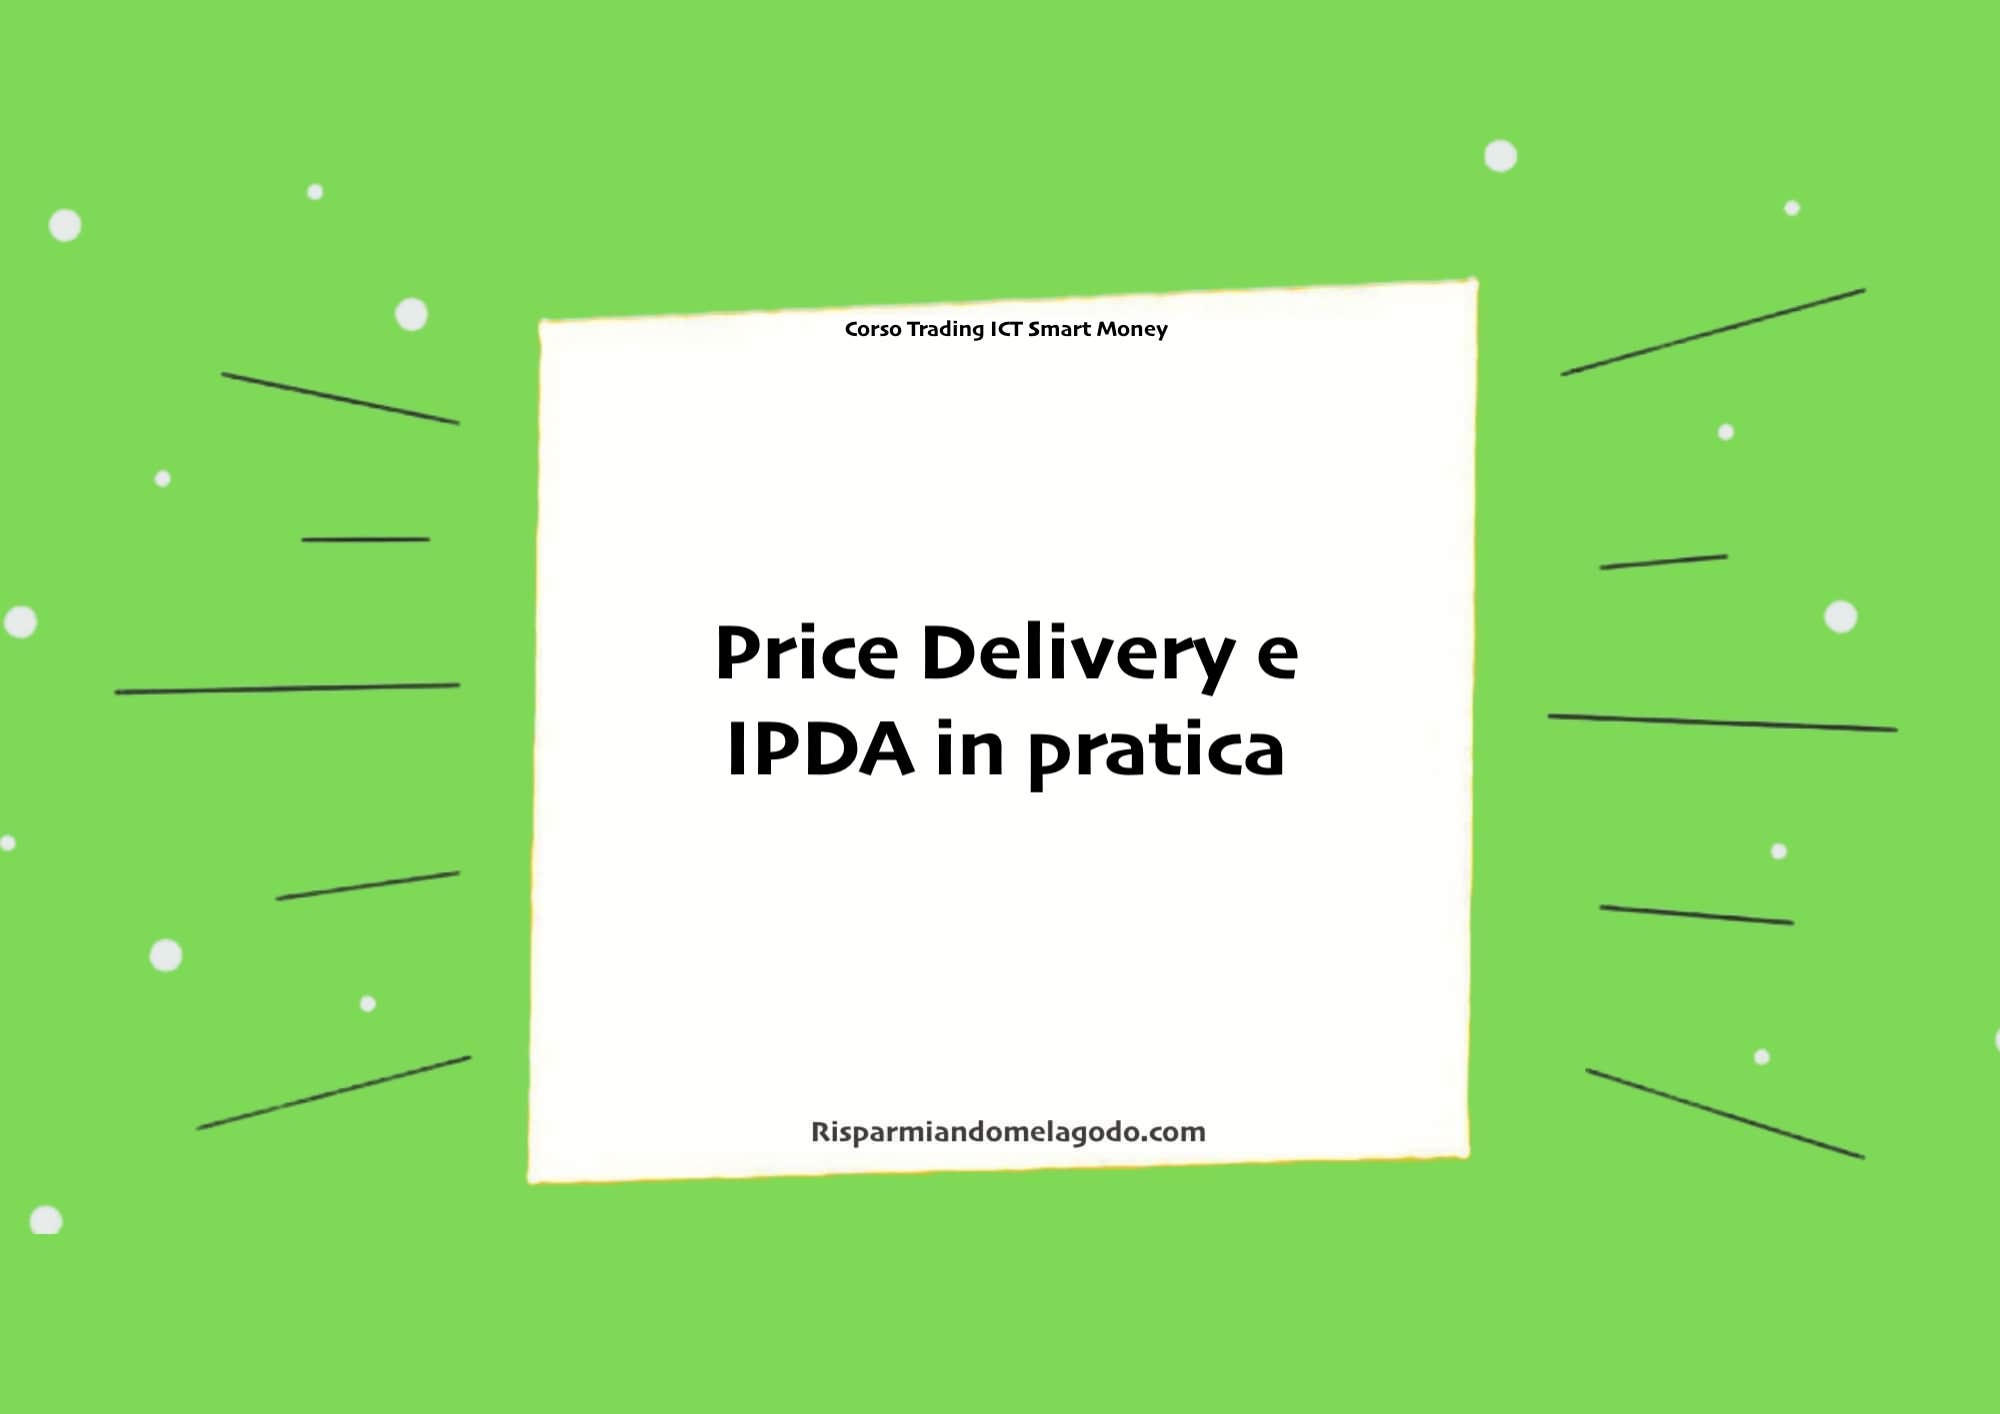 Price Delivery e IPDA in pratica Nel trading reale, il Price Delivery e l'IPDA possono essere utilizzati insieme per aiutare i trader a fare decisioni informate. Per esempio, un trader potrebbe osservare il movimento dei prezzi durante la giornata di trading (IPDA) e utilizzare queste informazioni per identificare possibili tendenze (Price Delivery).